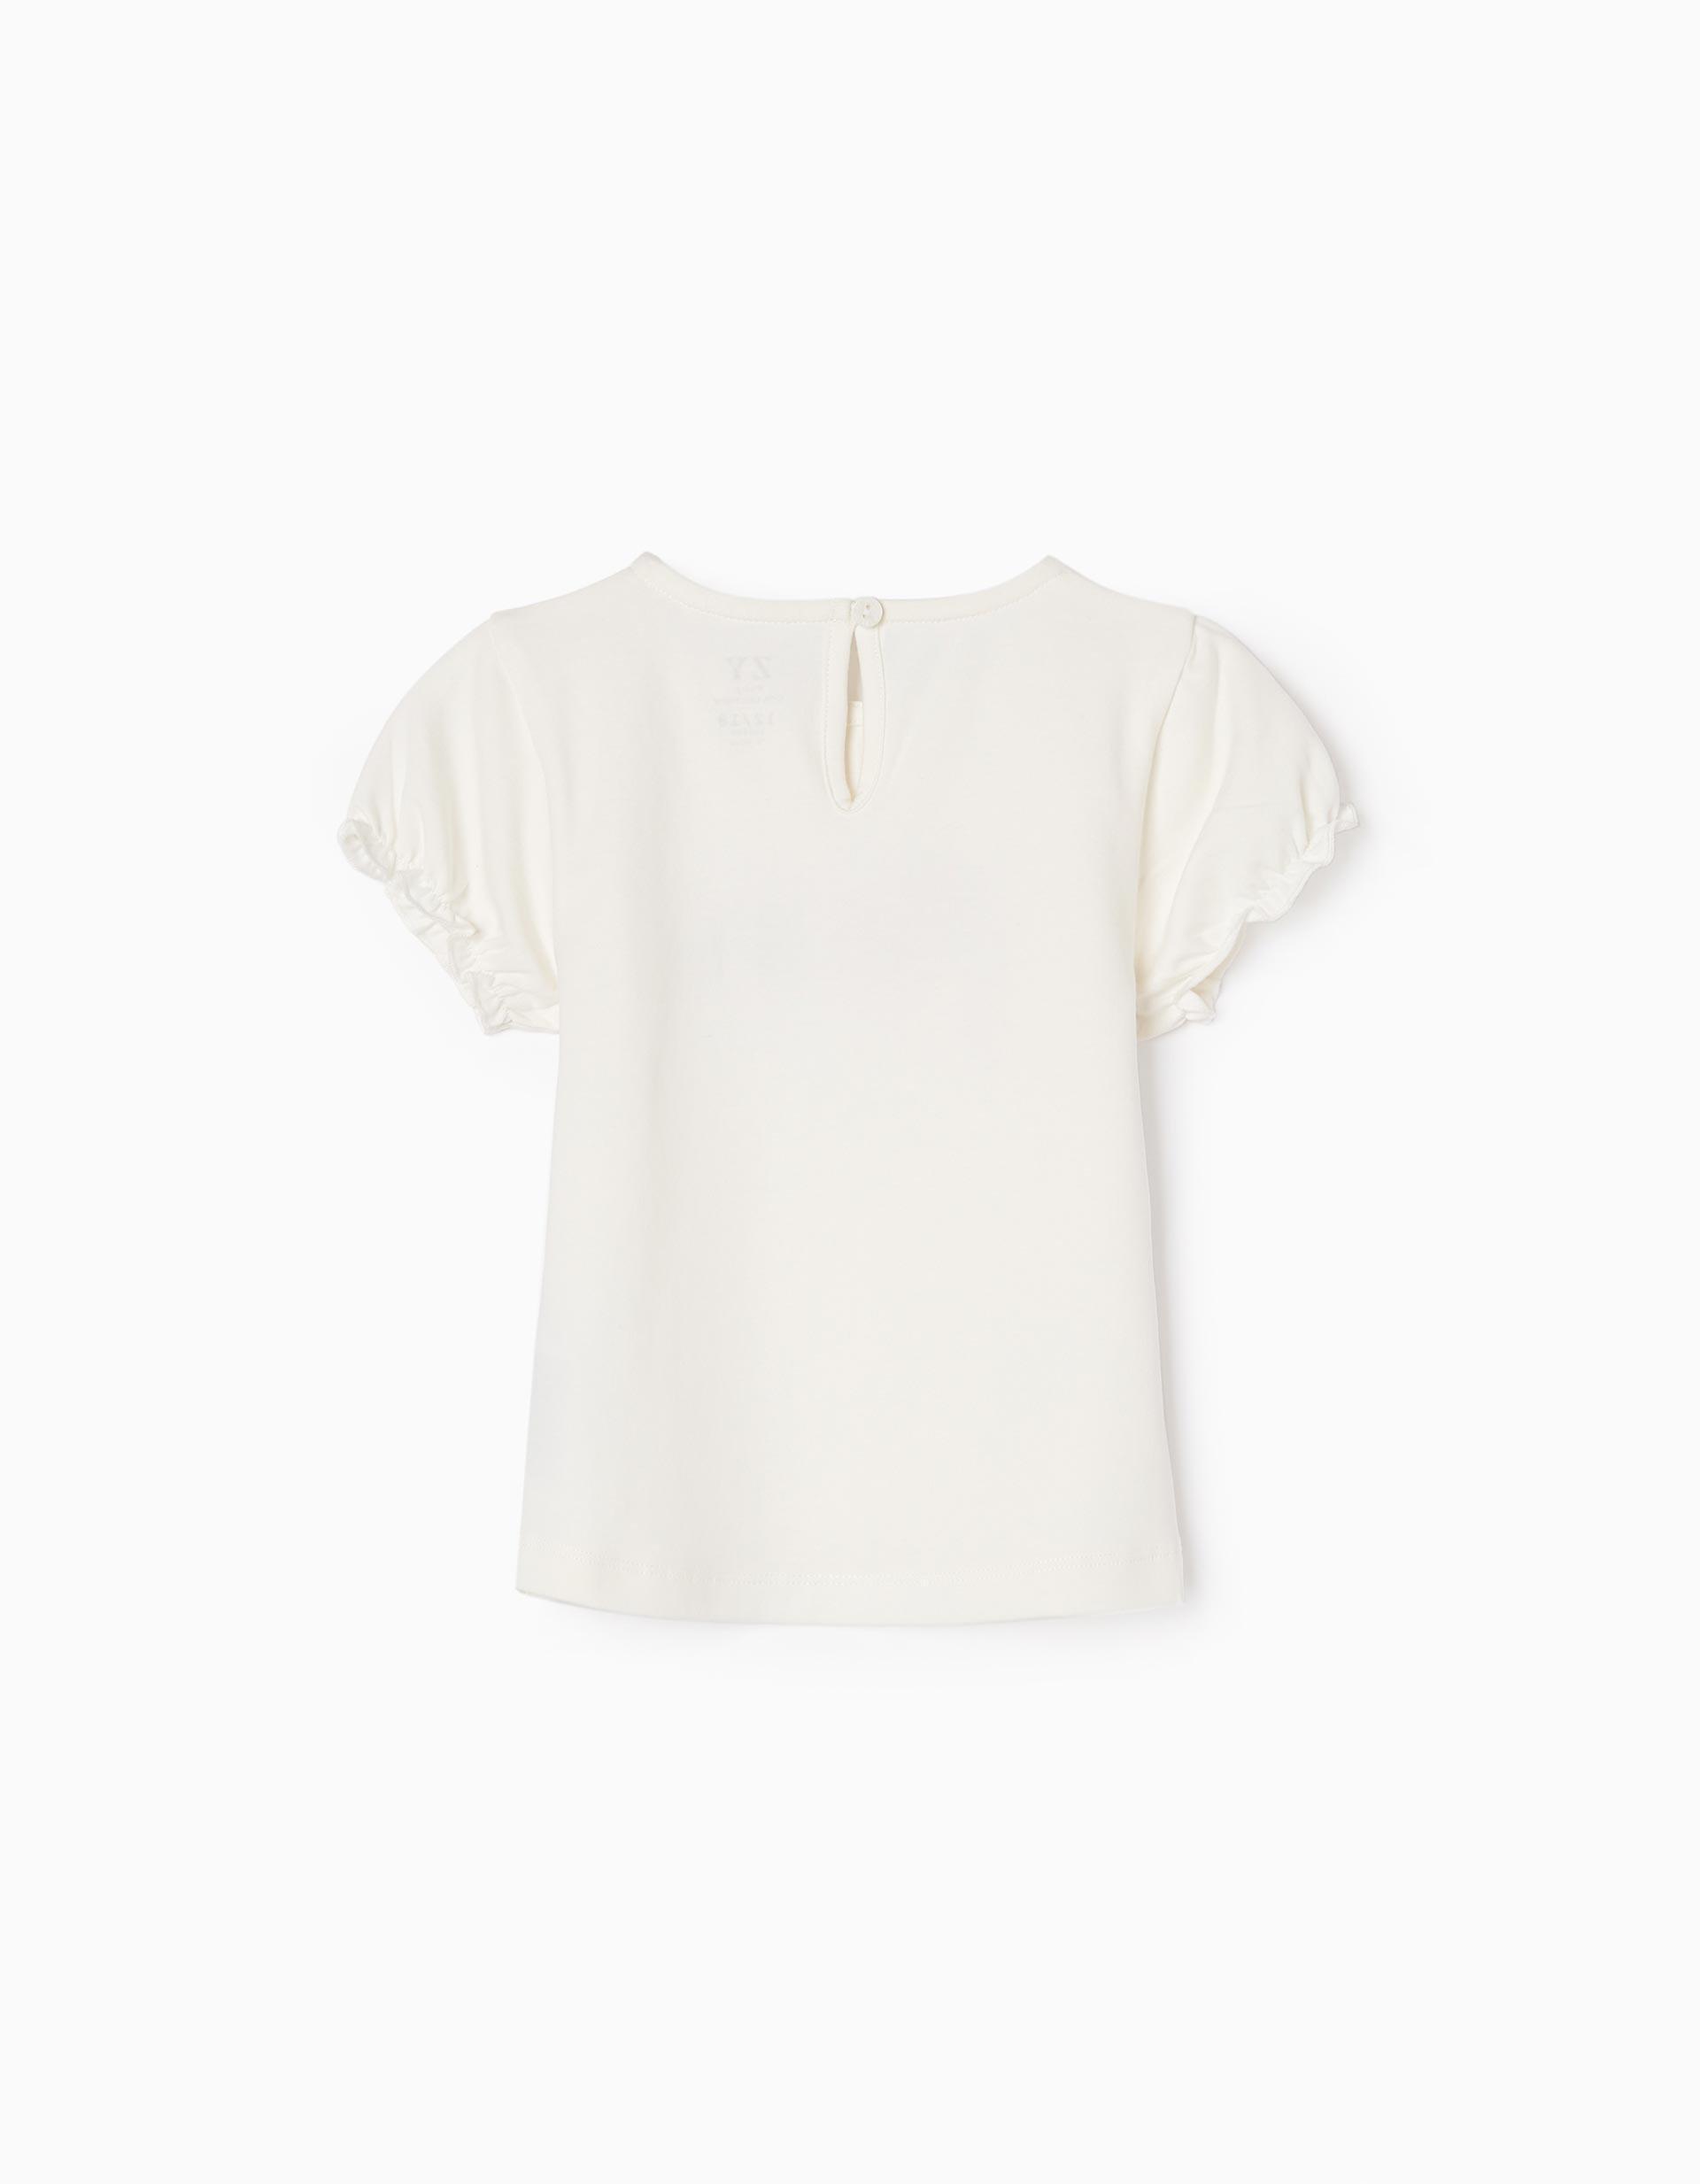 Zippy - White Printed T-Shirt, Baby Girls